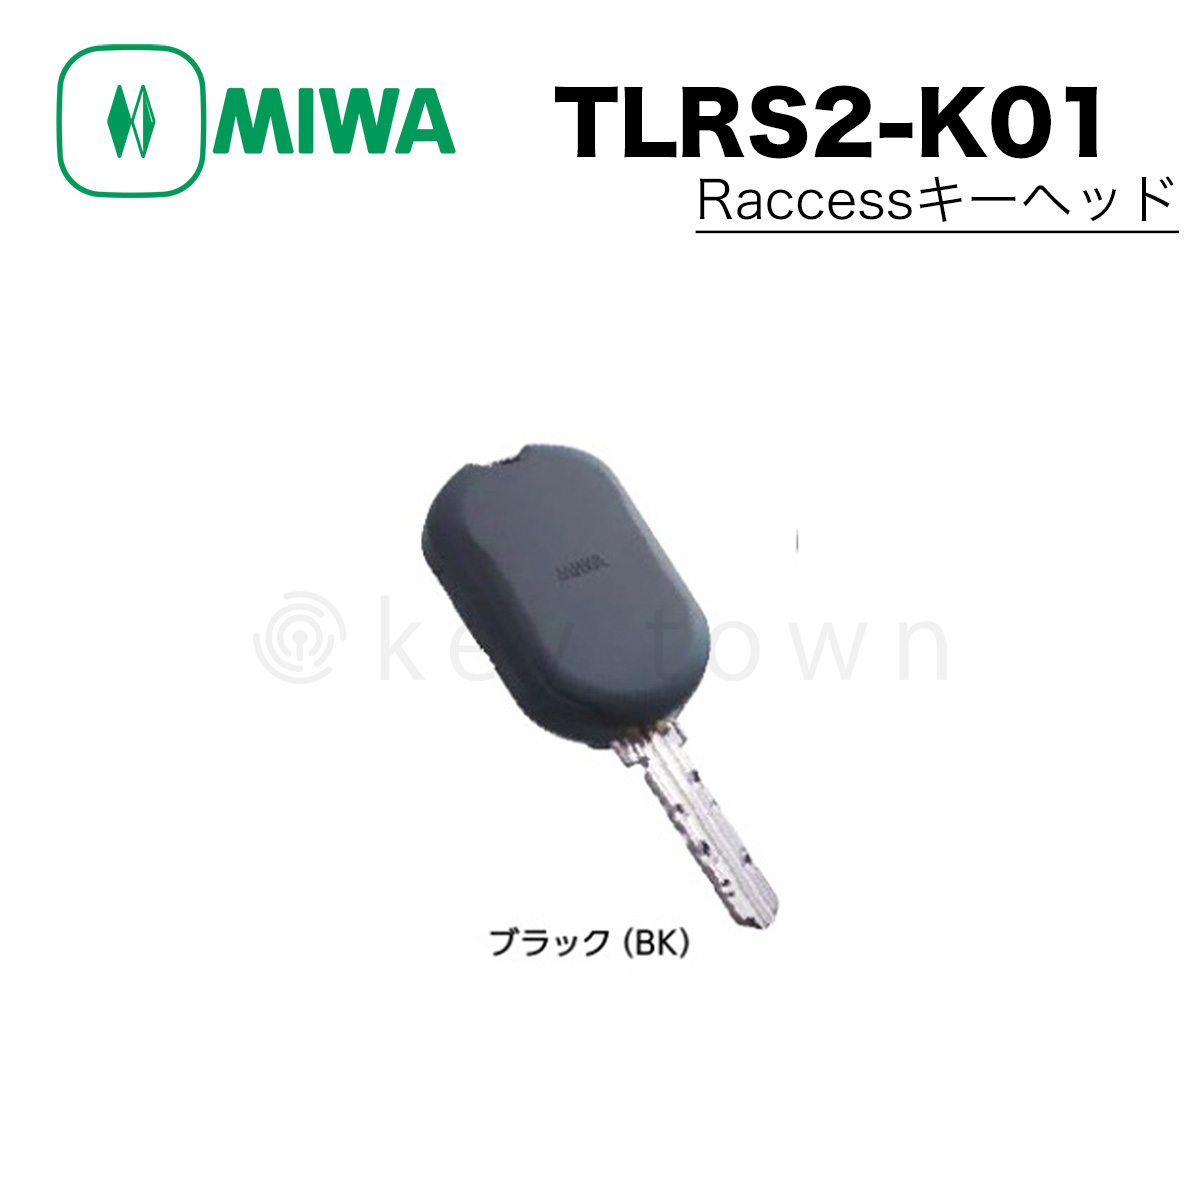 MIWA 【美和ロック】Raccess キーヘッド [MIWA-TLRS2-K01] TLRS2-K01